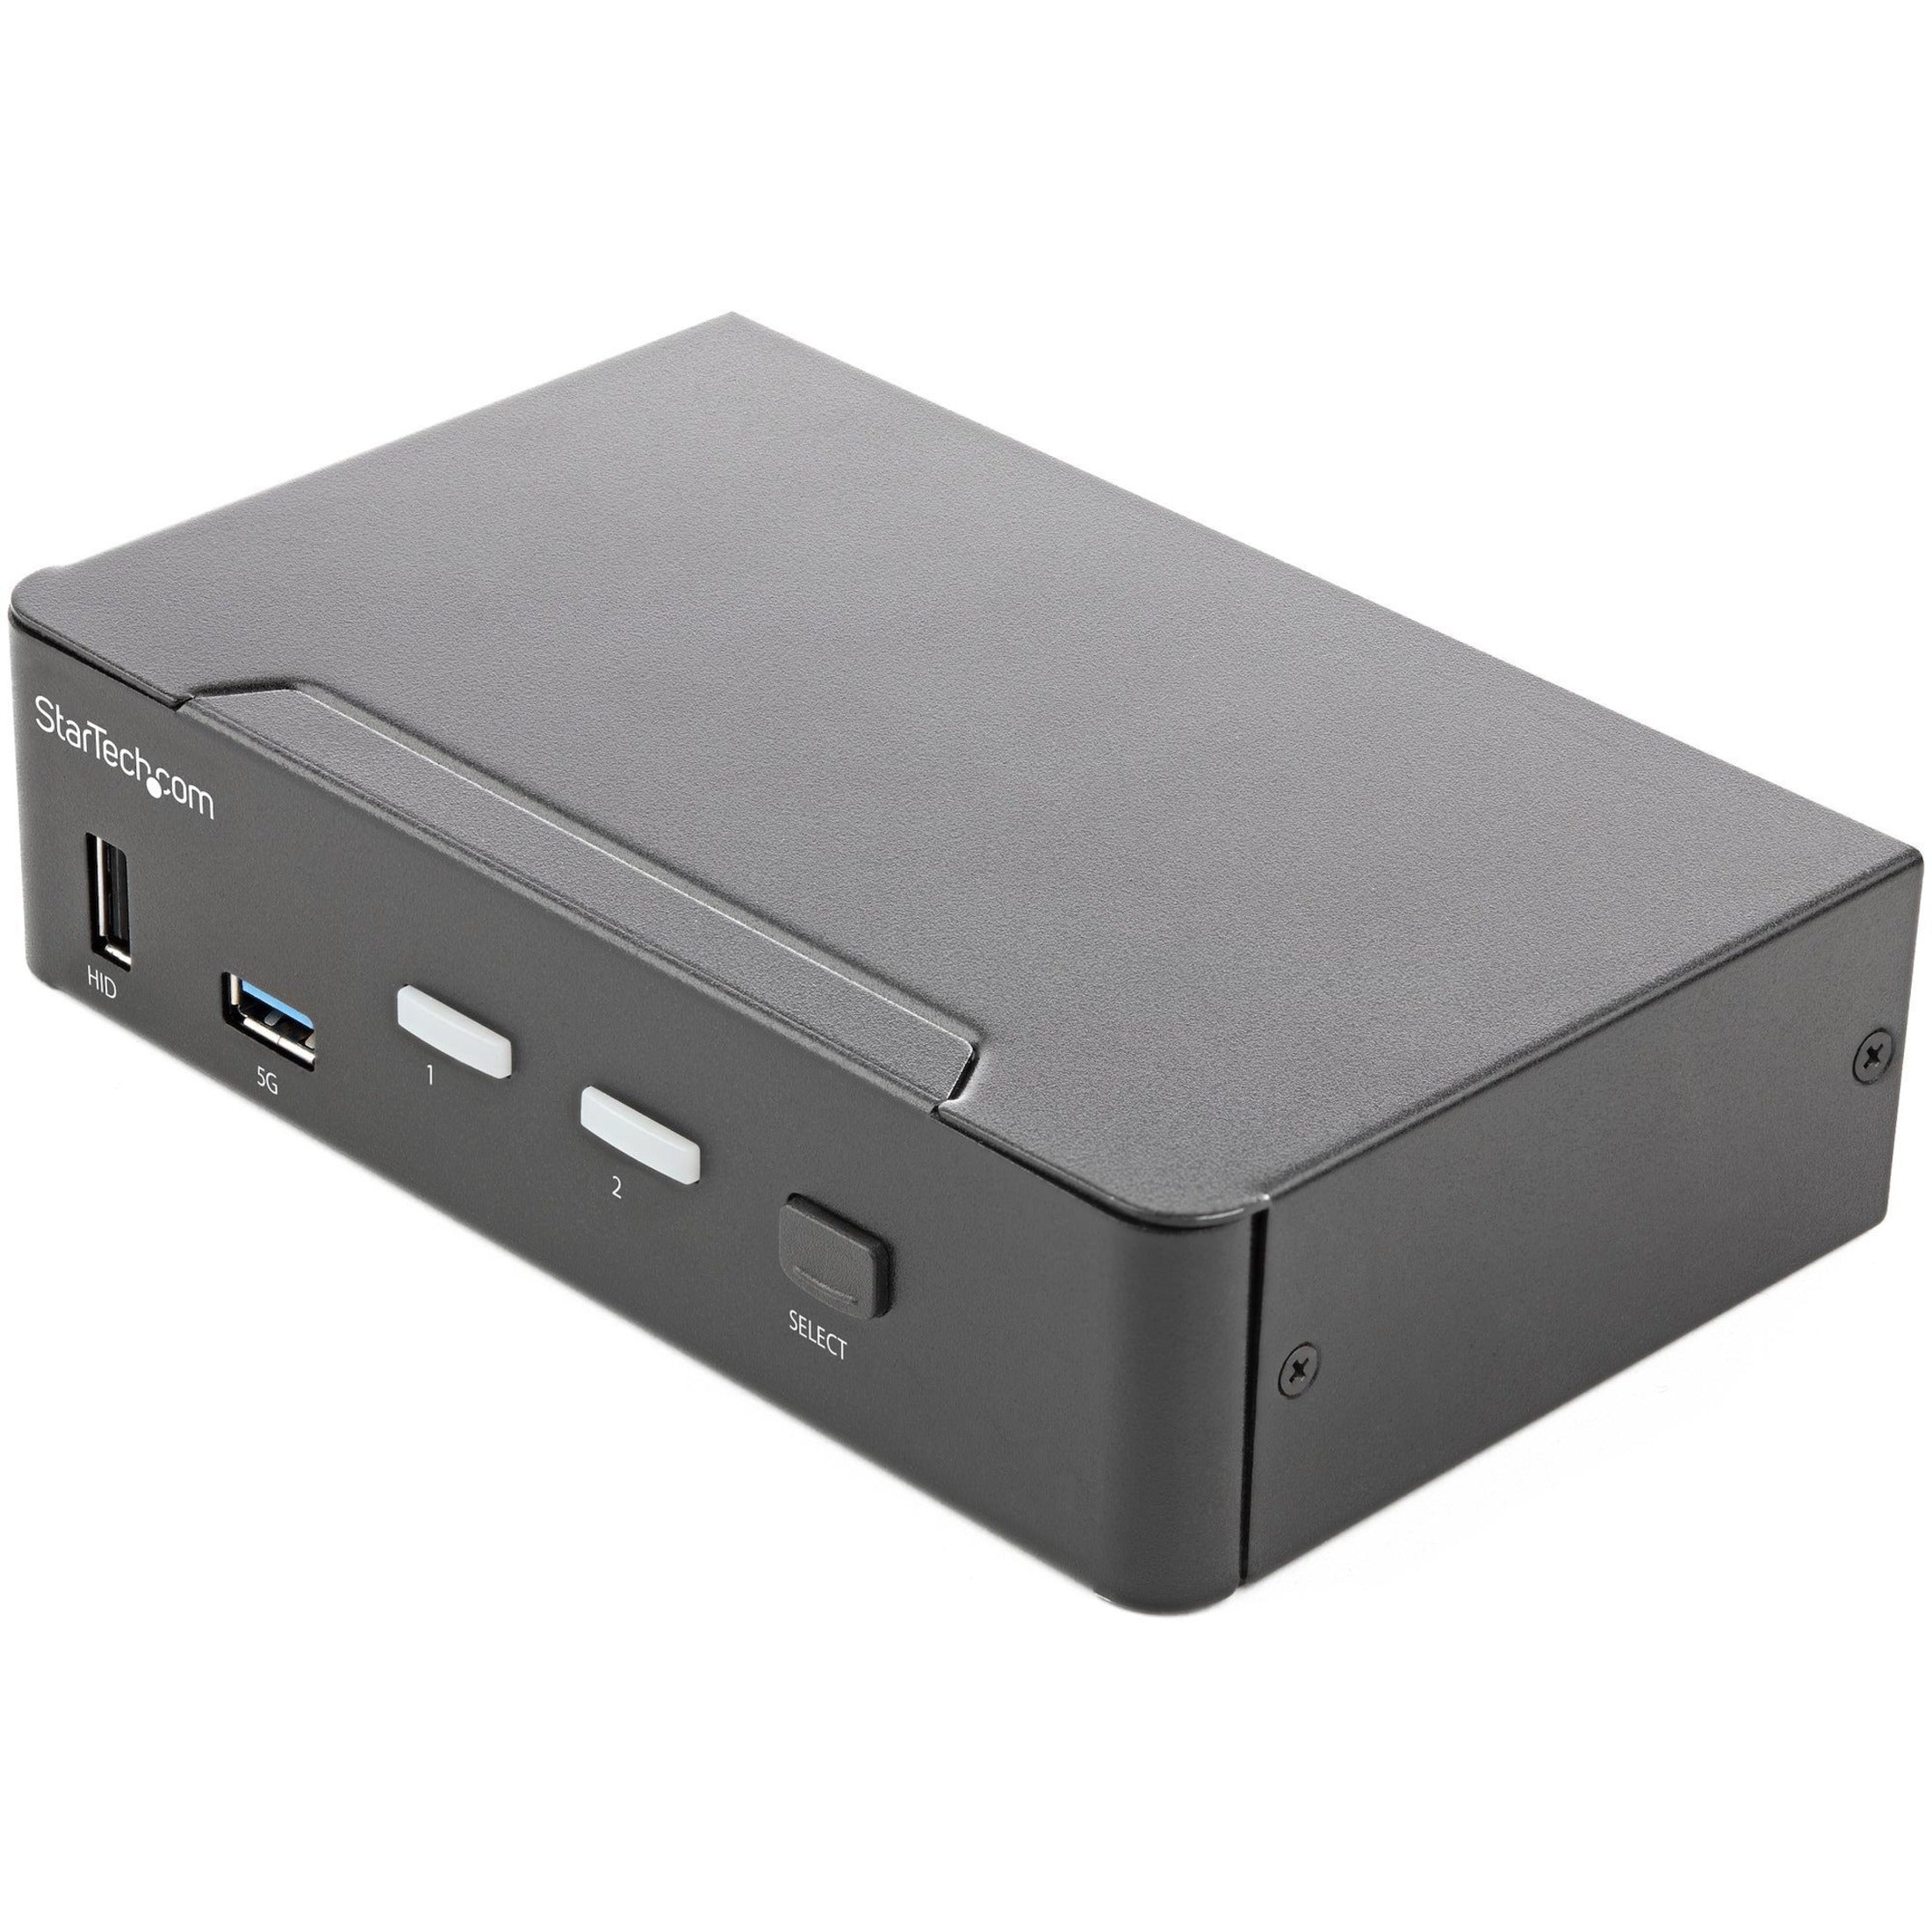 سويتش إتش دي إم آي KVM ذو منفذين 4K 60 هيرتز UHD HDR، شاشة واحدة، هوب يو إس بي 3.0، صوت، تبديل بالأزرار الساخنة، TAA  StarTech.com